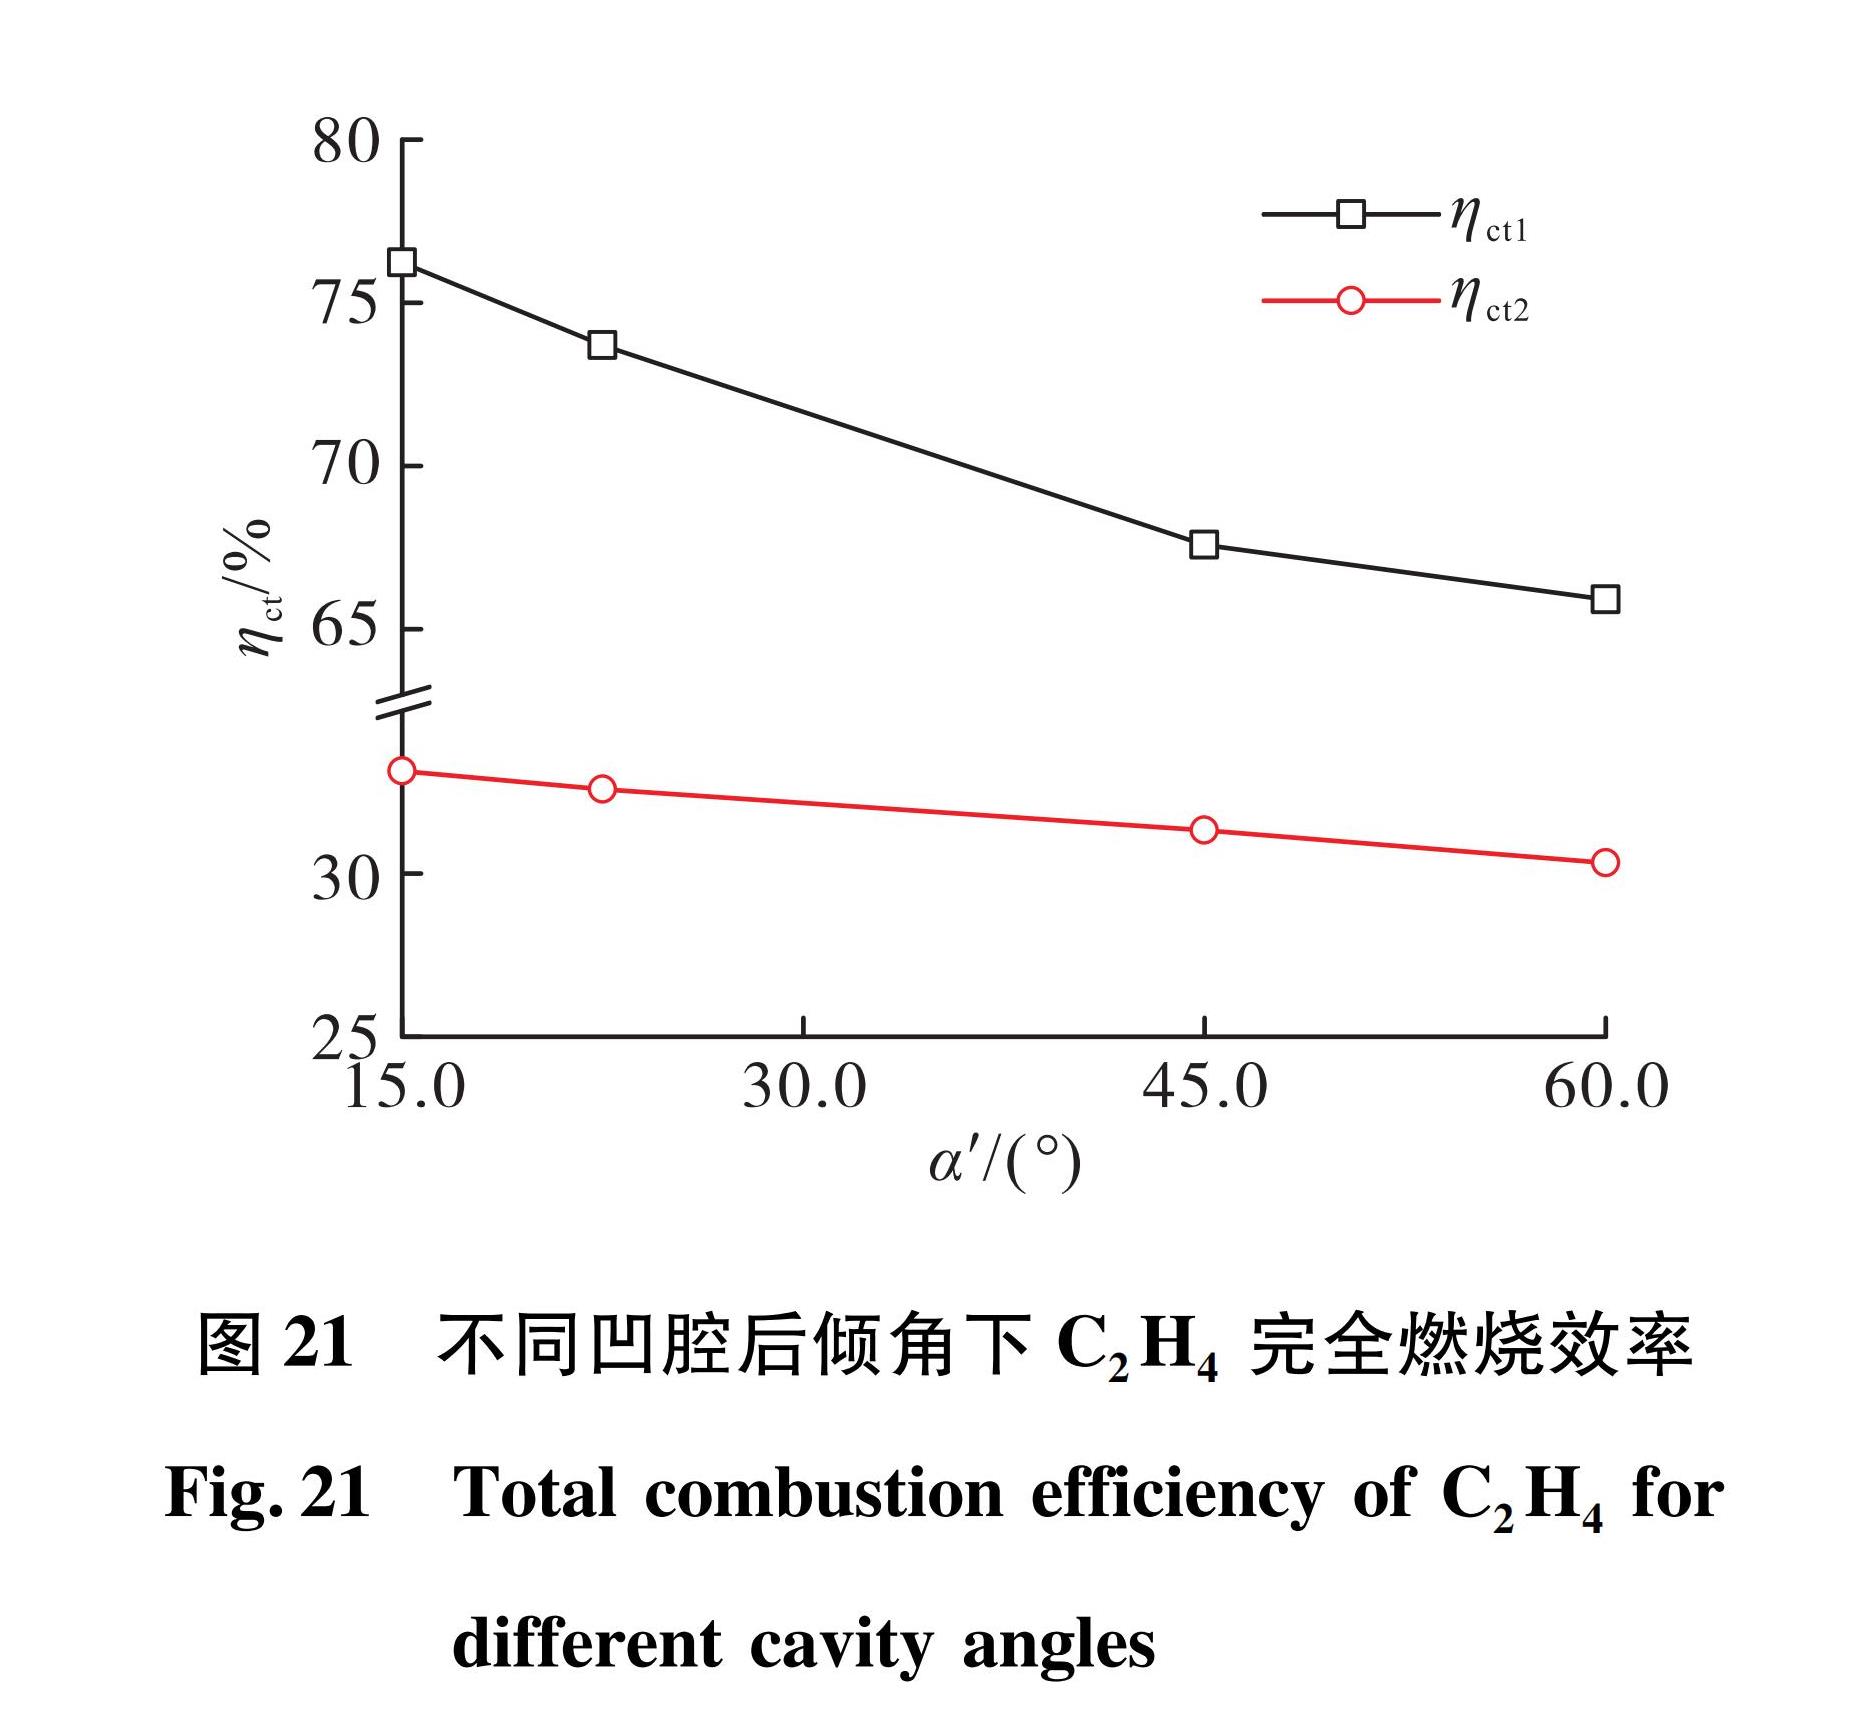 图 21 不同凹腔后倾角下C2H4完全燃烧效率<br/>Fig.21 Total combustion efficiency of C2H4 for different cavity angles